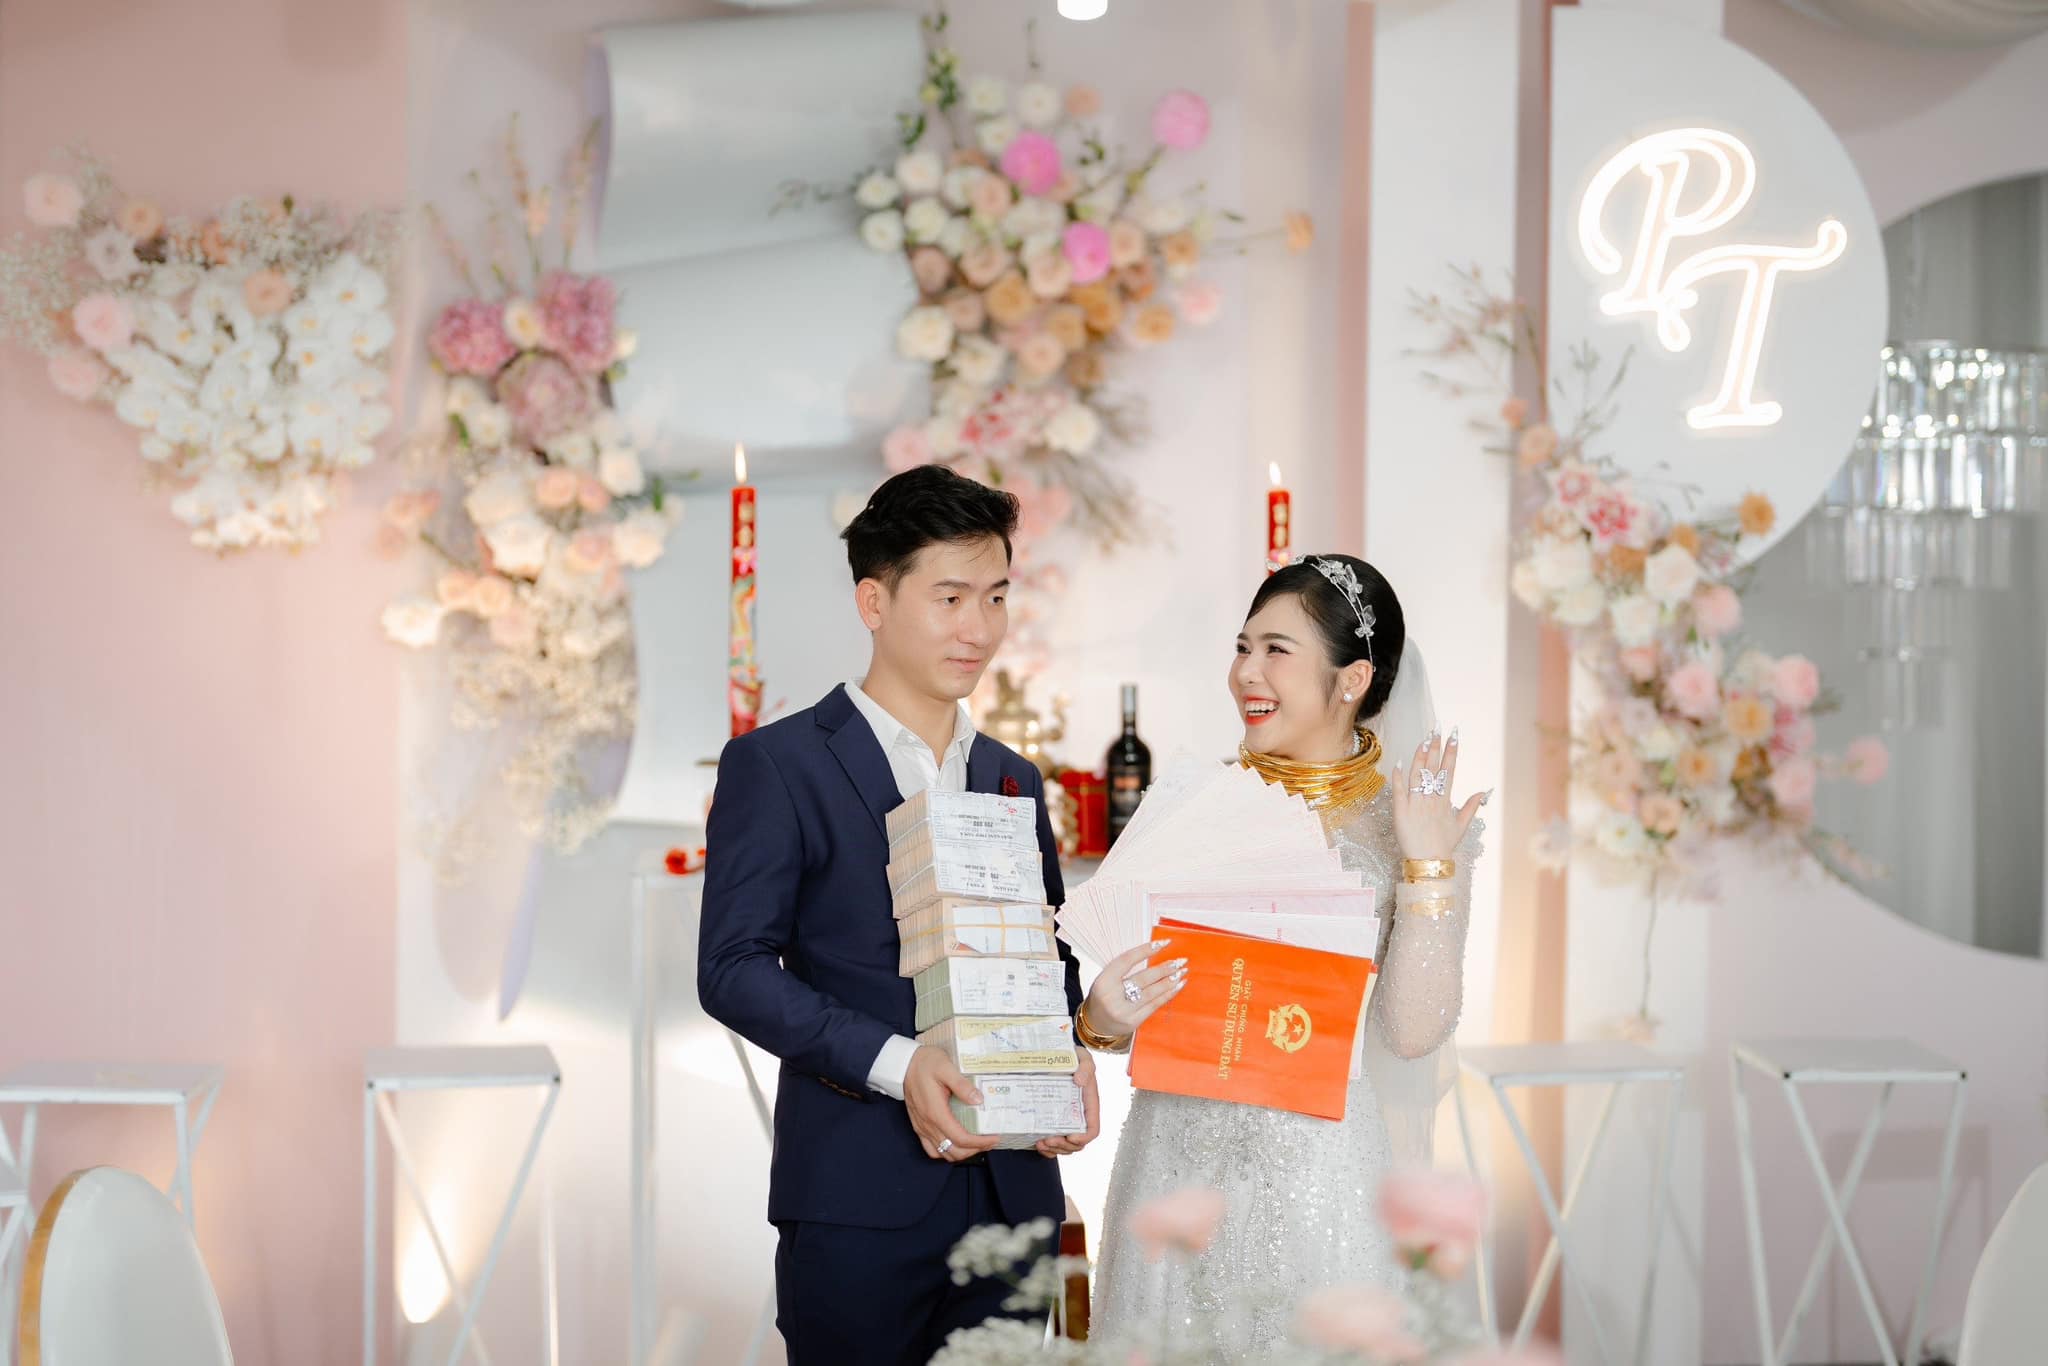 View - Đám cưới cực khủng tại Long An: Cô dâu xinh đẹp nhận 16 cuốn sổ đỏ, 25 cây vàng, 2.5 tỷ đồng, kim cương